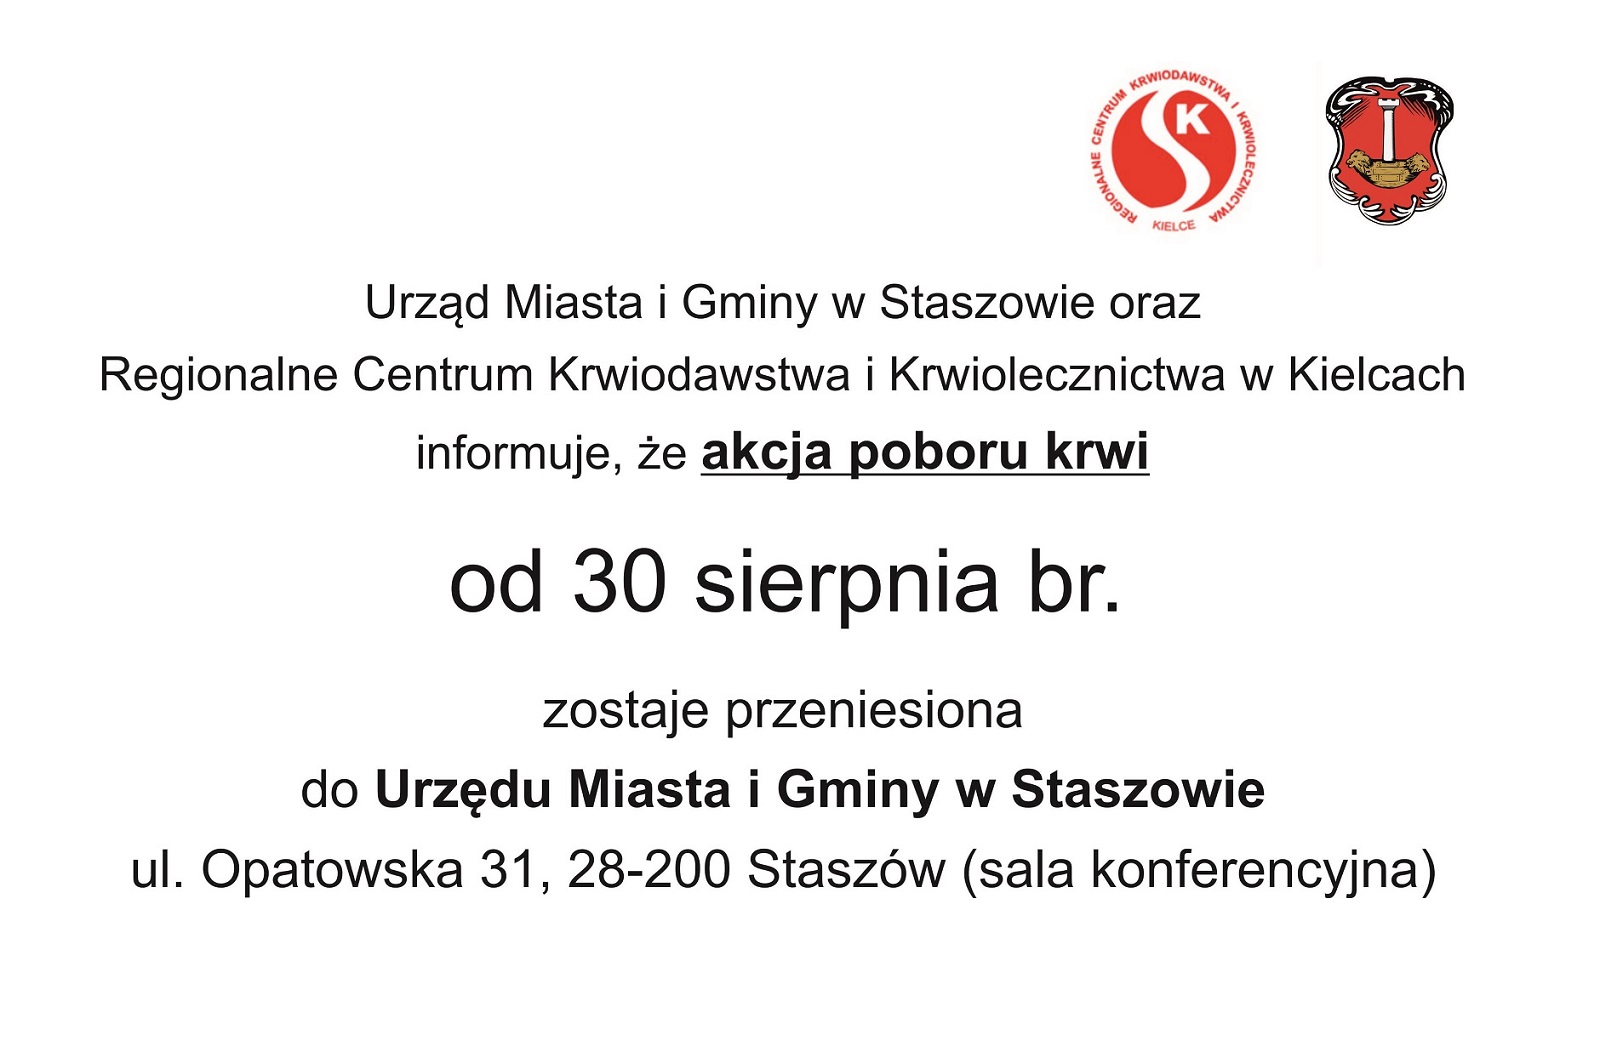 Przypominamy, że akcja poboru krwi została przeniesiona do Urzędu Miasta i Gminy w Staszowie, przy ulicy Opatowskiej 31. Zapraszamy w najbliższy poniedziałek, 13 września, od godziny 9:00.